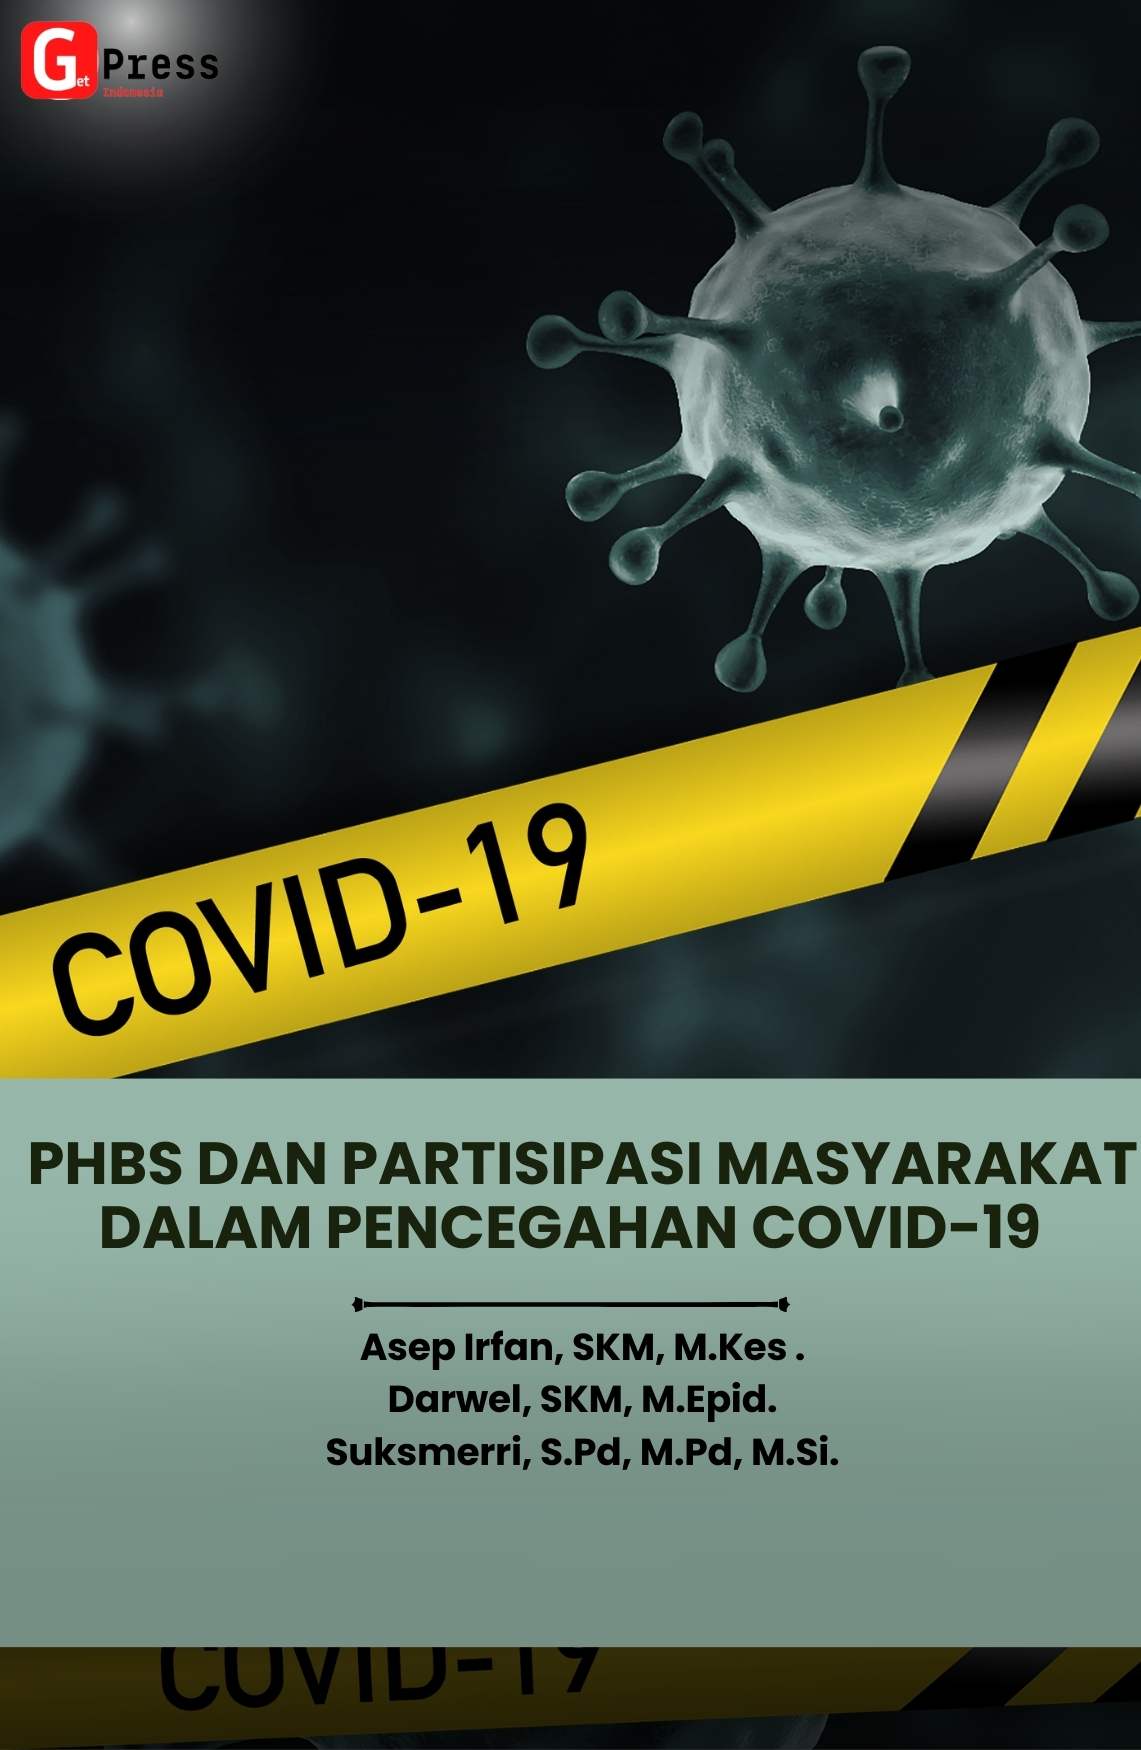 PHBS dan partisipasi masyarakat dalam pencegahan Covid-19